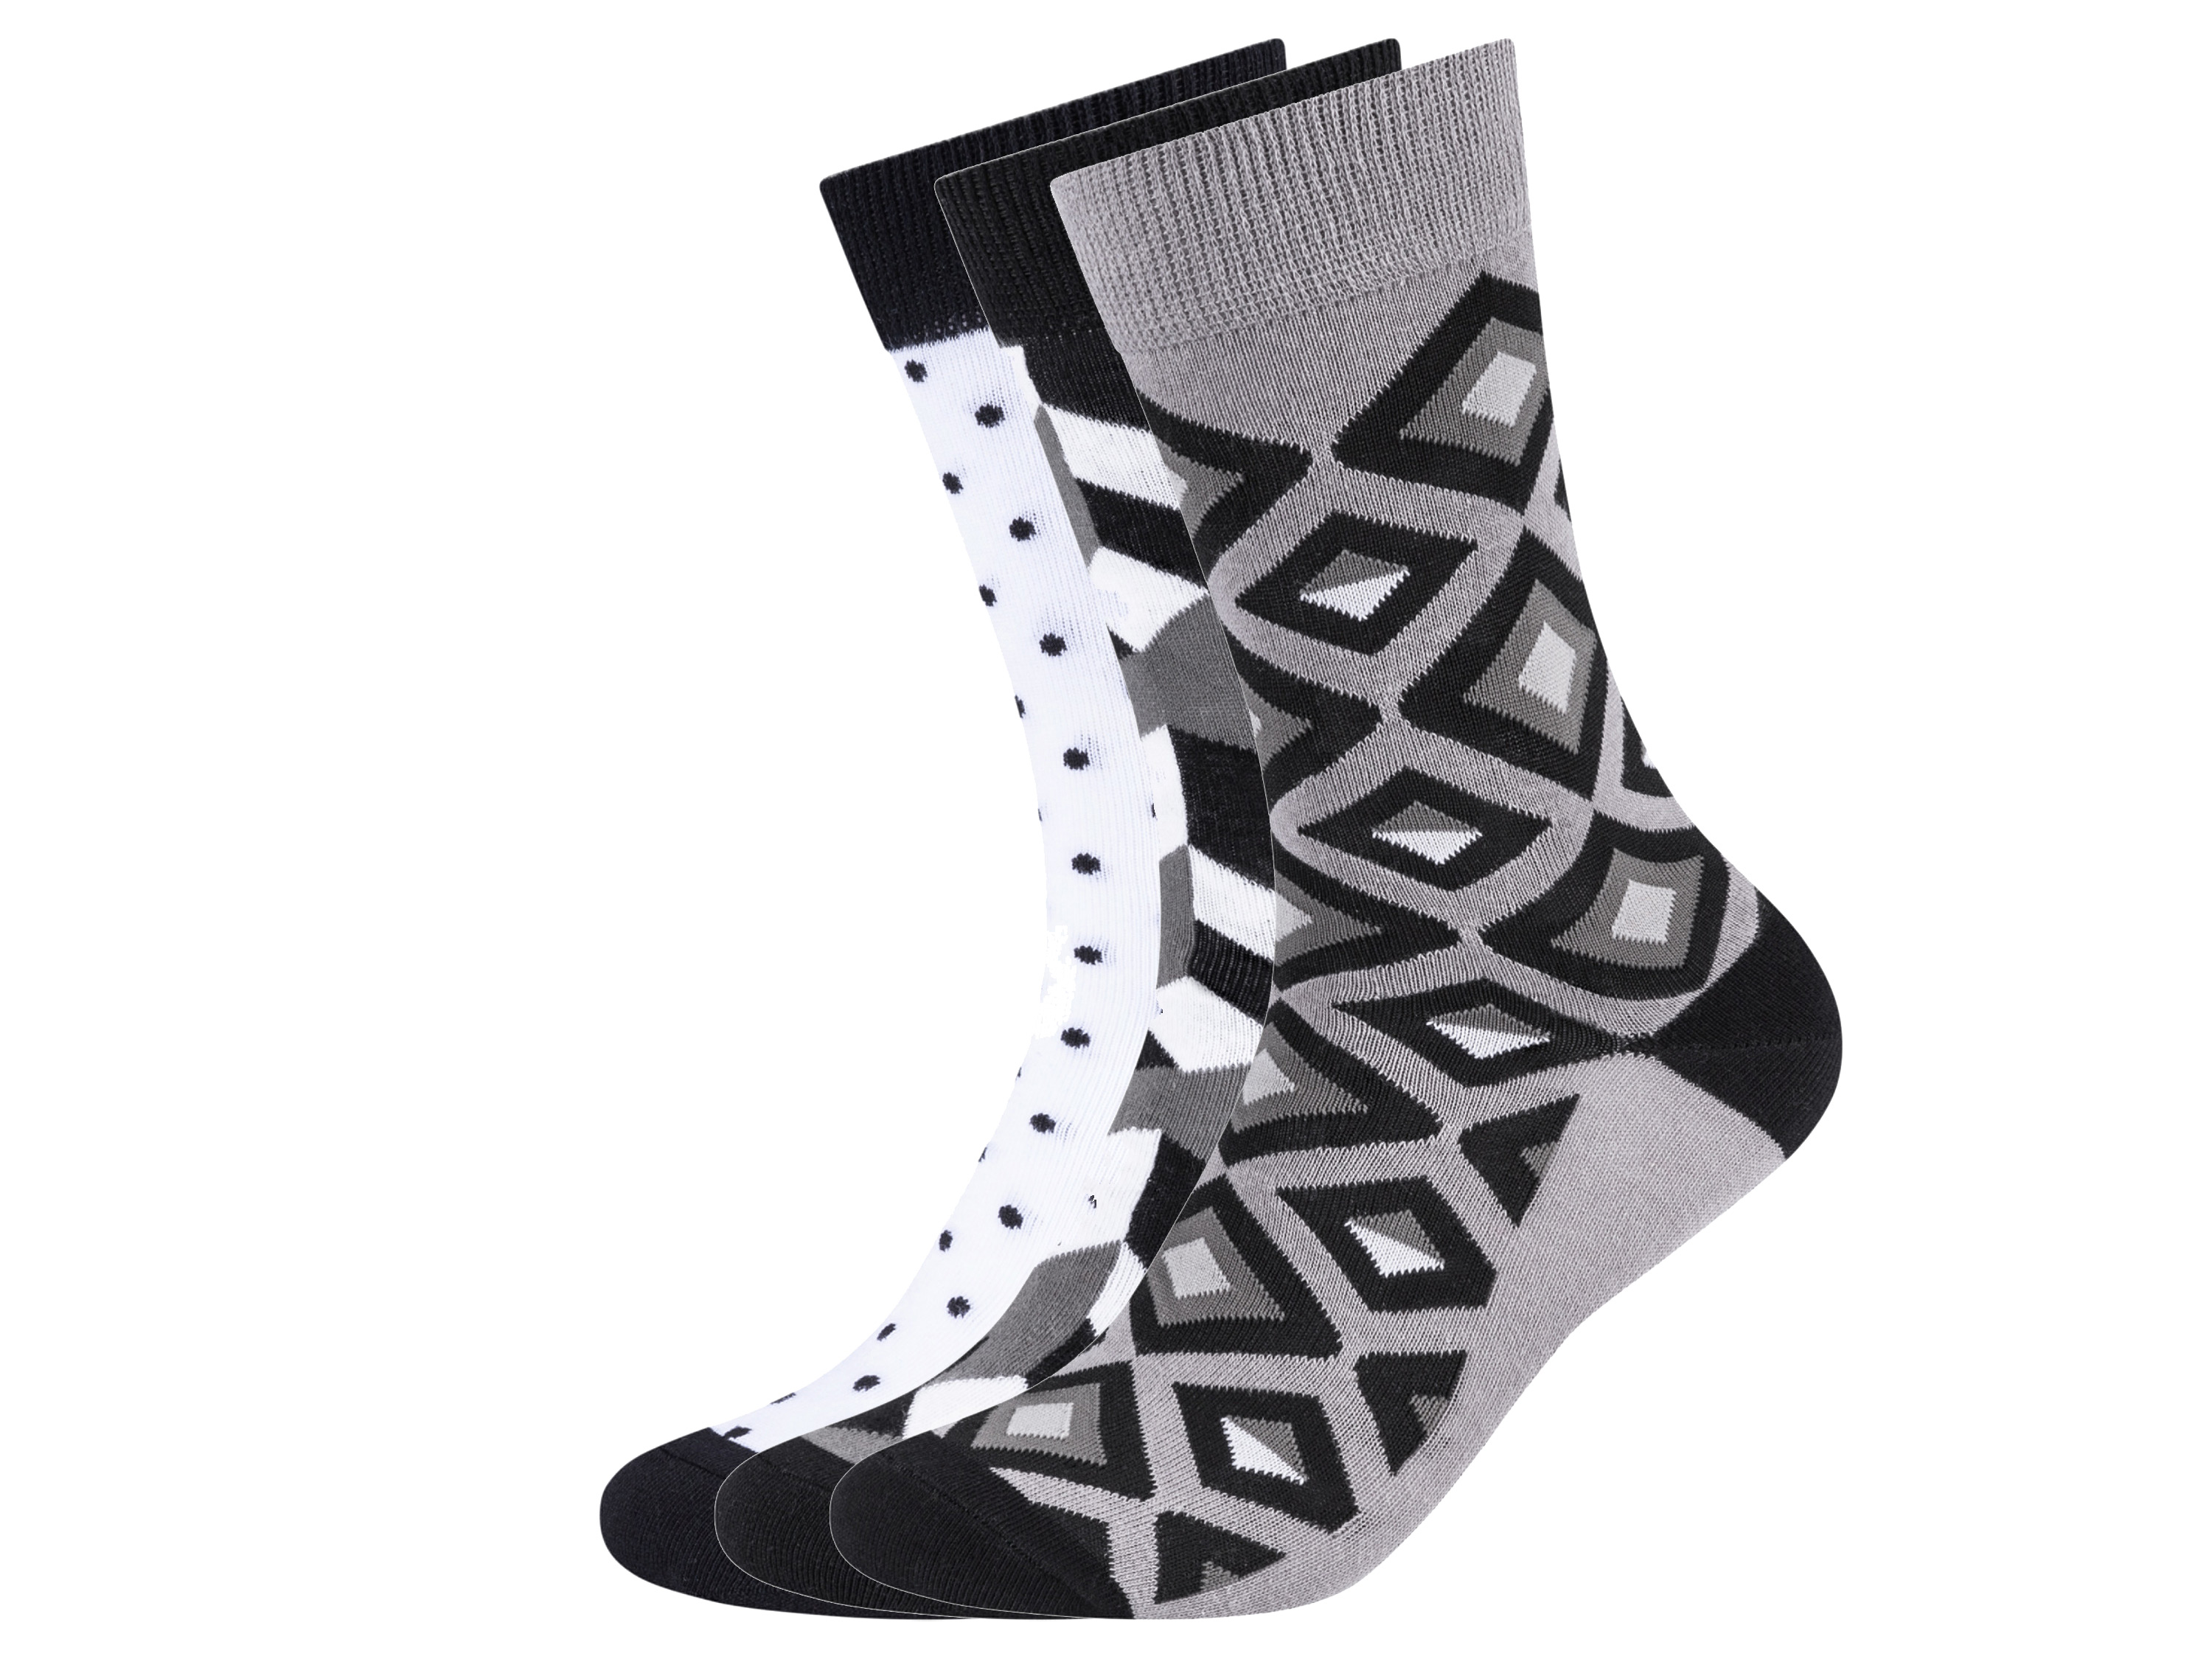 Fun Socks 3 paar sokken (36-40, Zwart en wit)